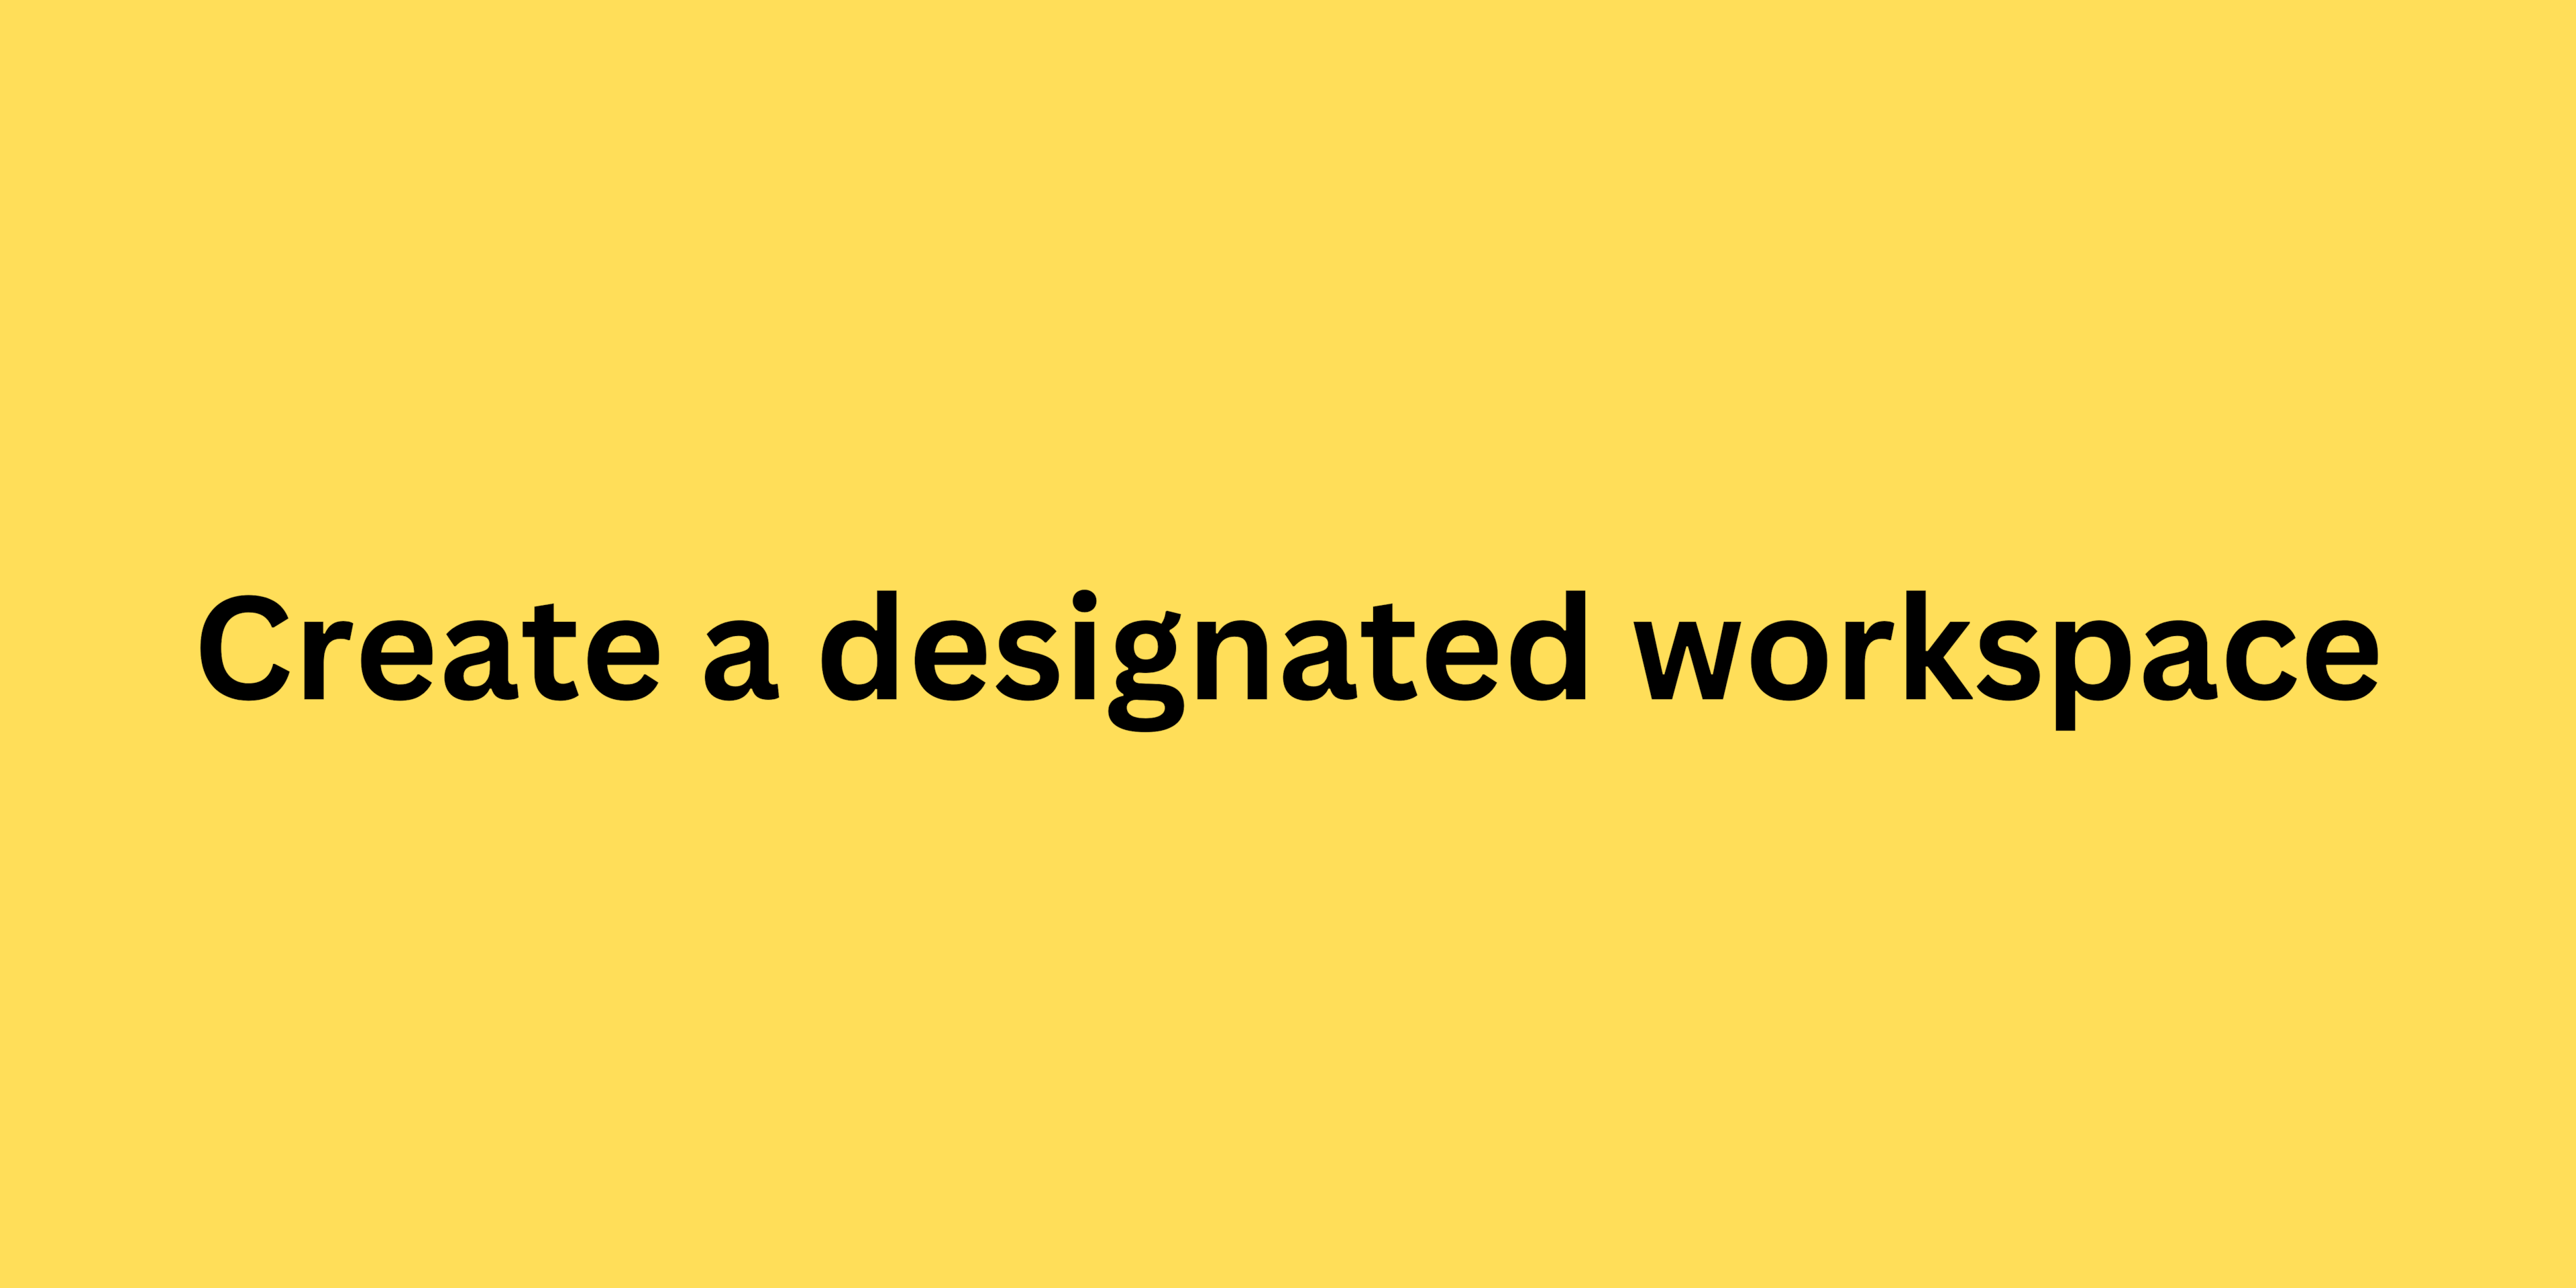 Create a designated workspace